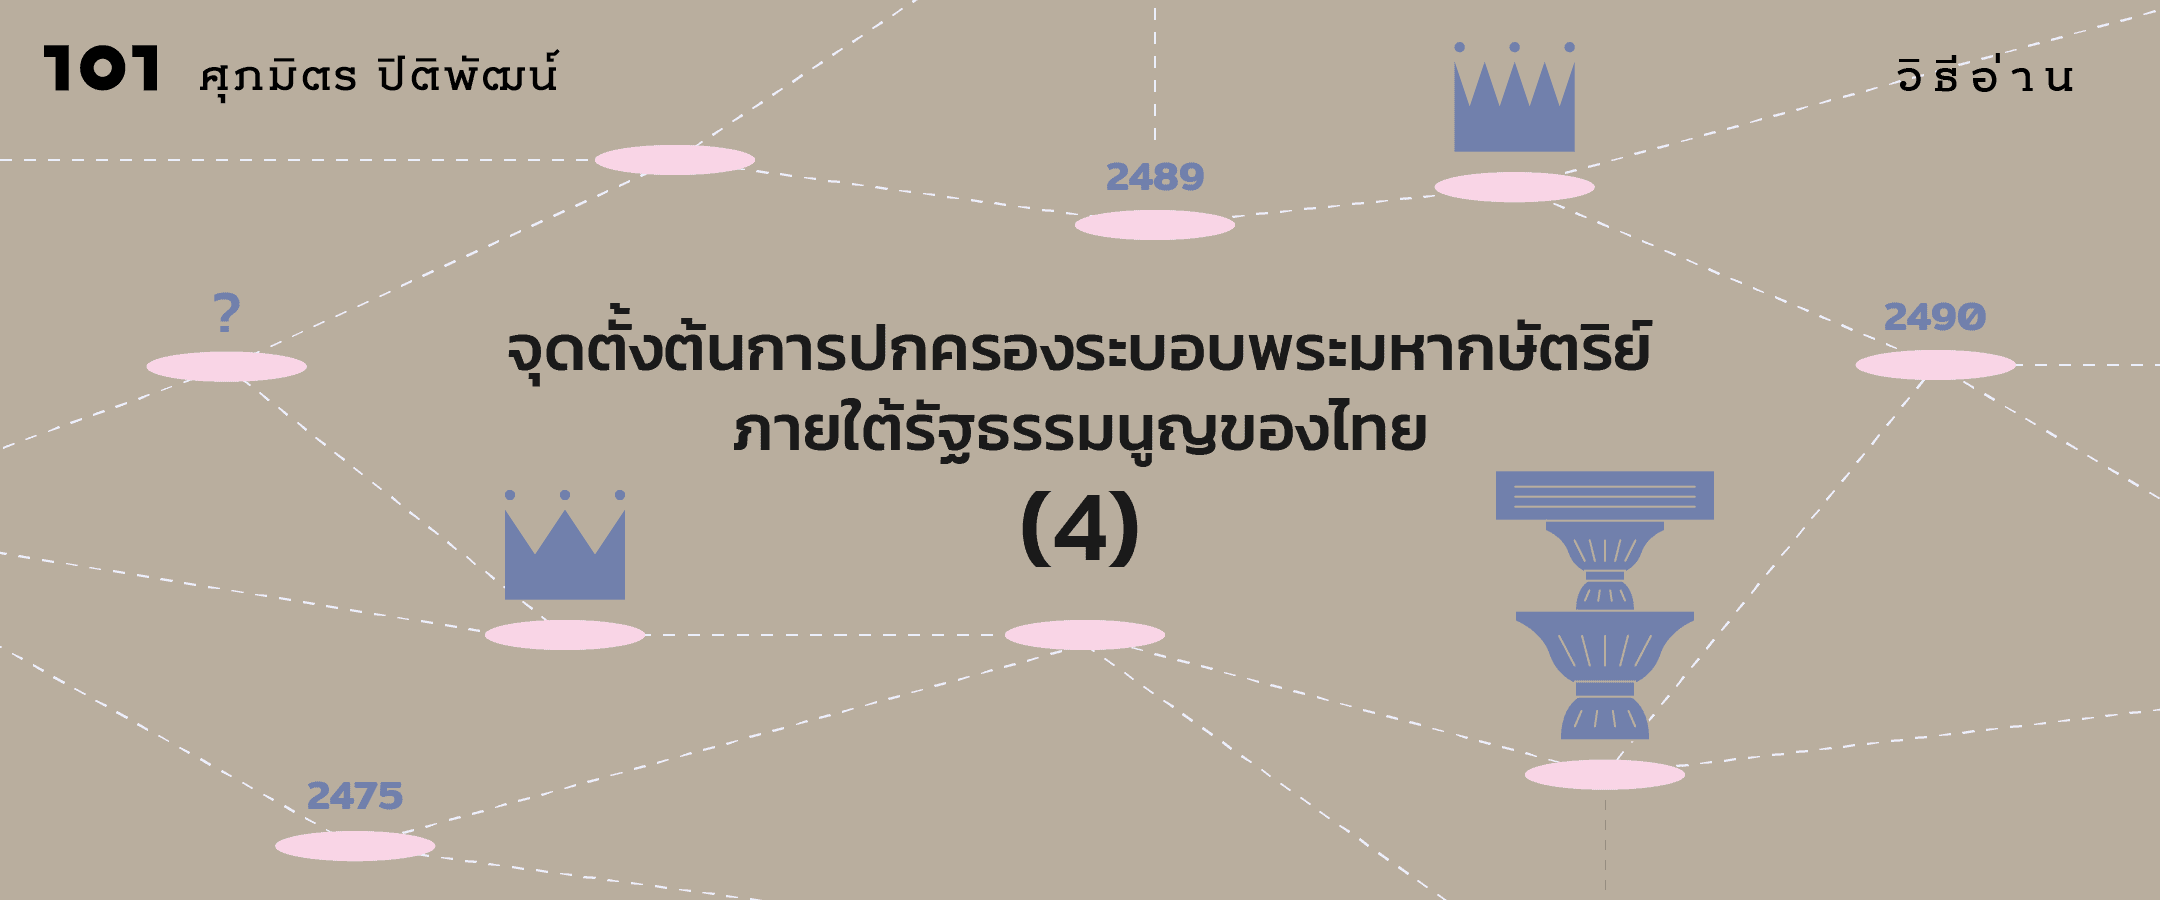 จุดตั้งต้นการปกครองระบอบพระมหากษัตริย์ภายใต้รัฐธรรมนูญของไทย (4)